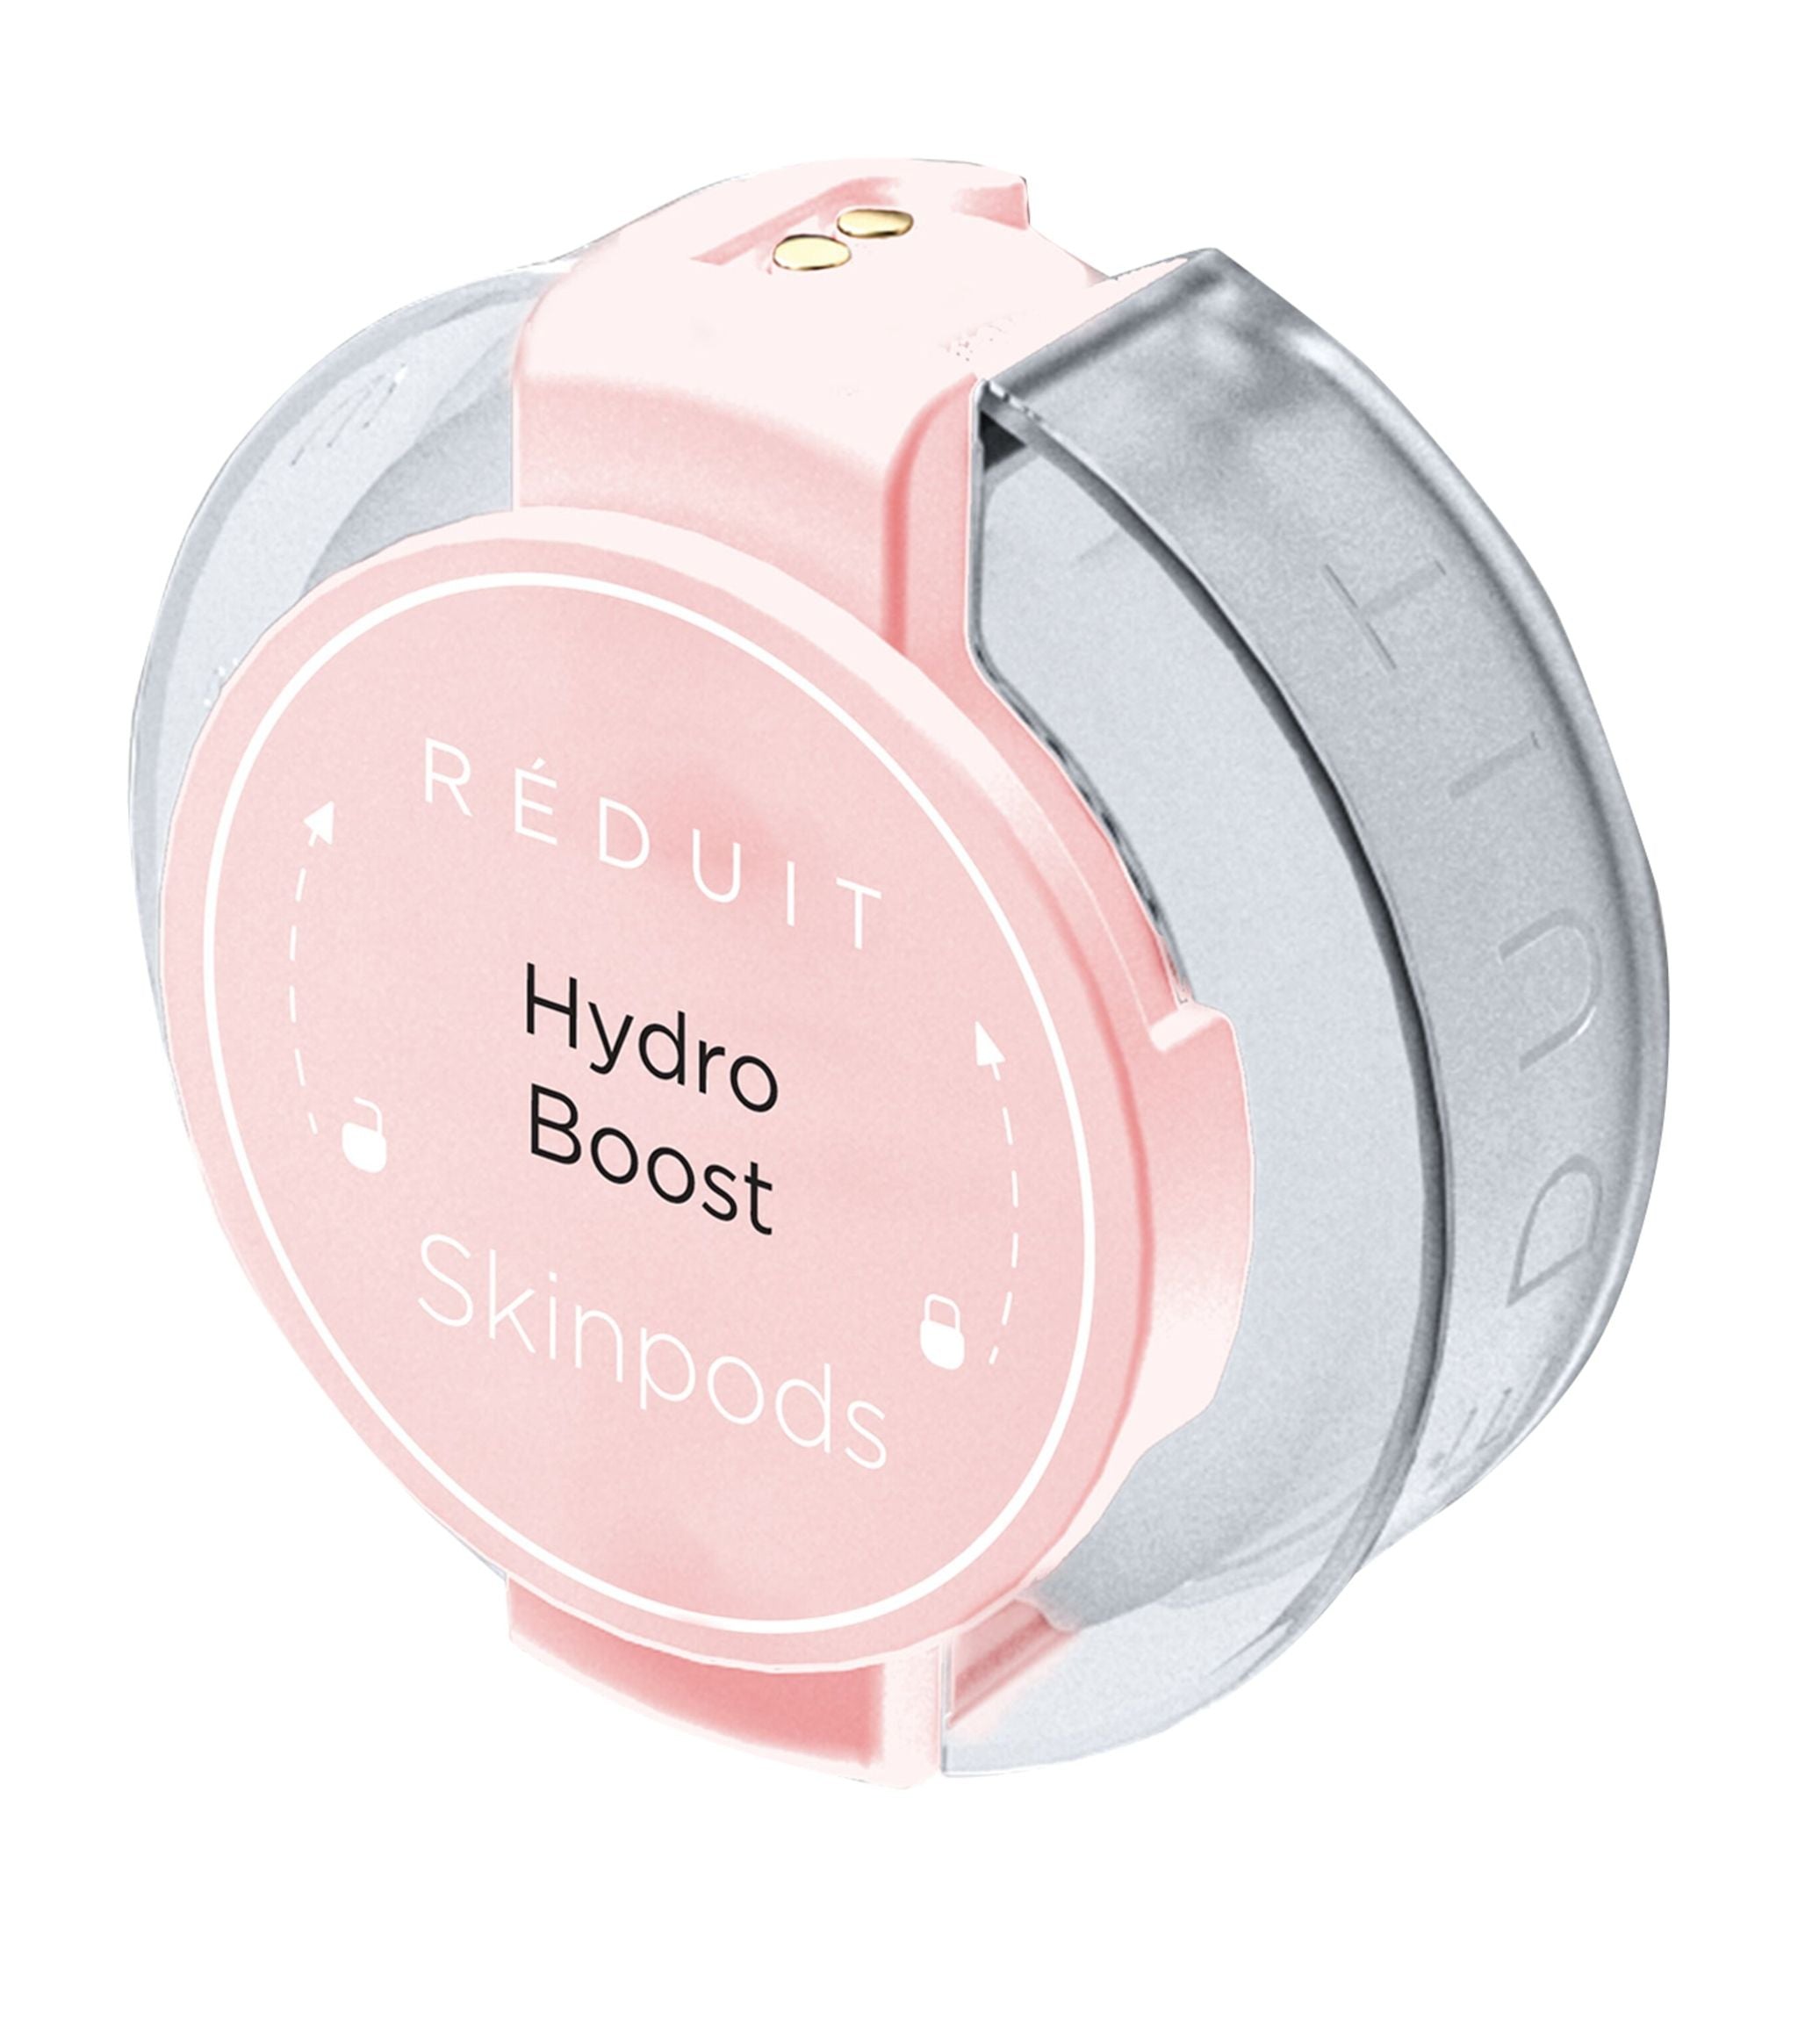 Hydro Boost Skinpod (5ml) Facial Skincare Harrods   